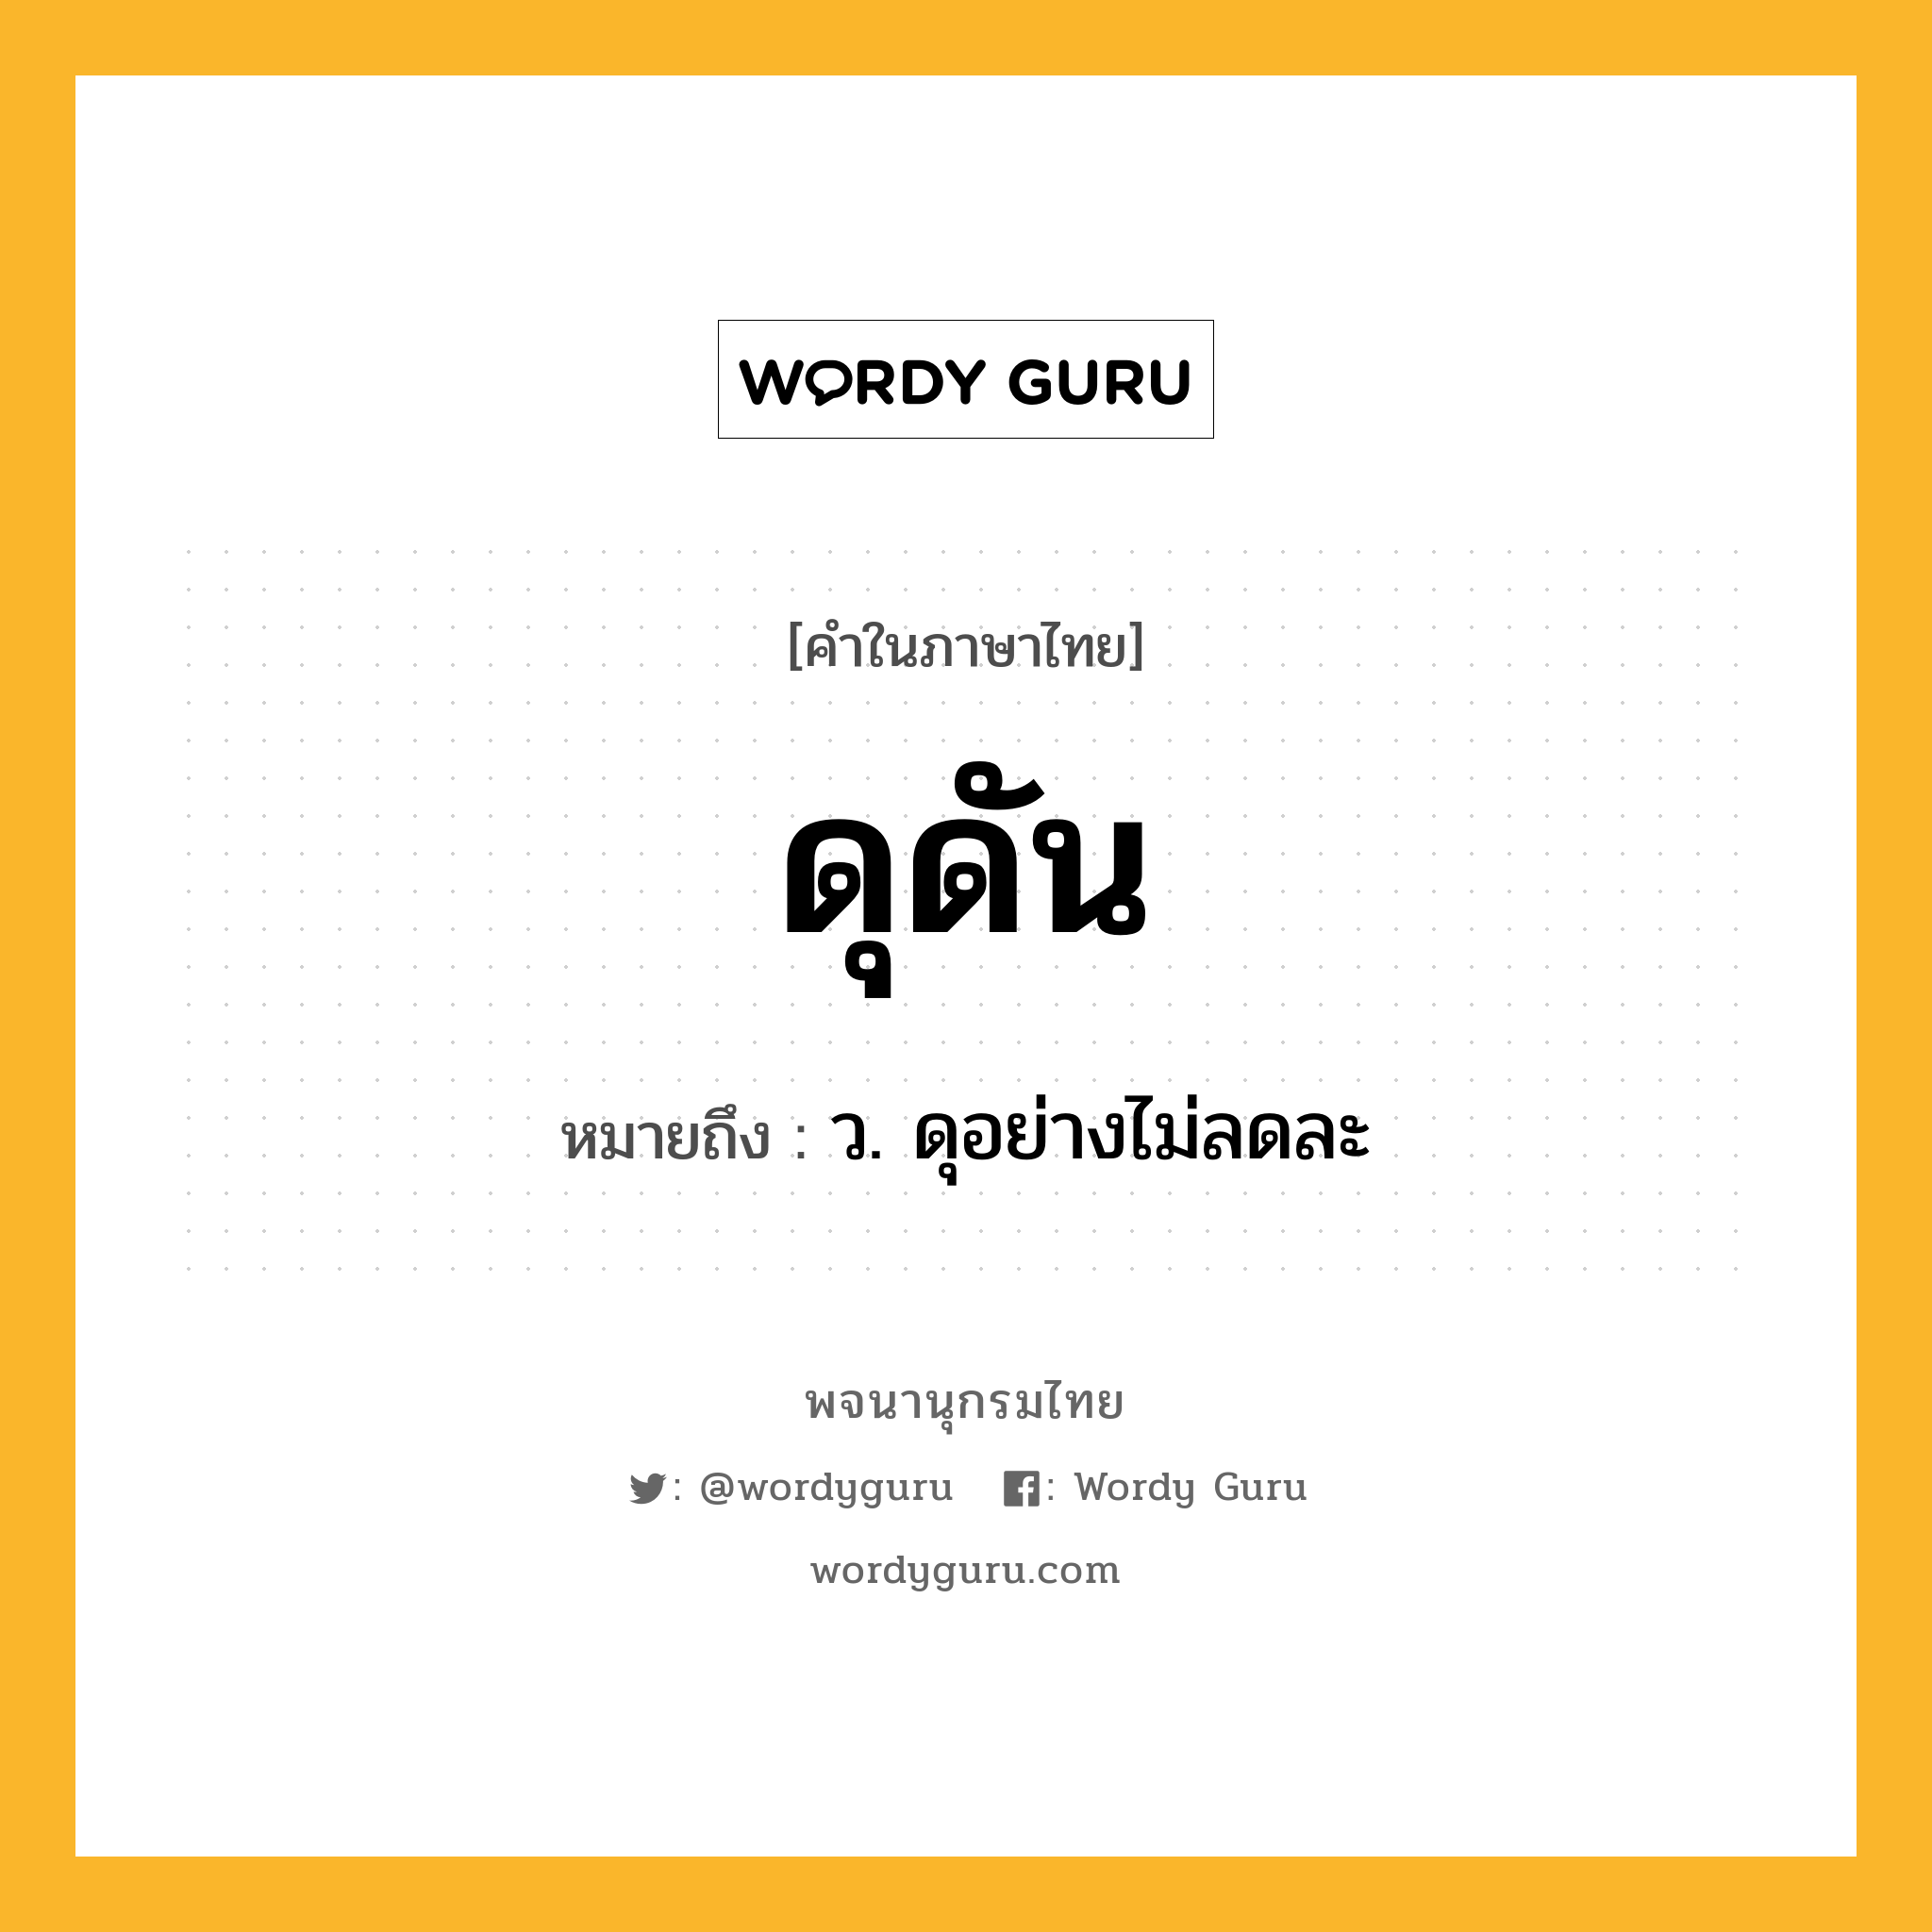 ดุดัน หมายถึงอะไร?, คำในภาษาไทย ดุดัน หมายถึง ว. ดุอย่างไม่ลดละ